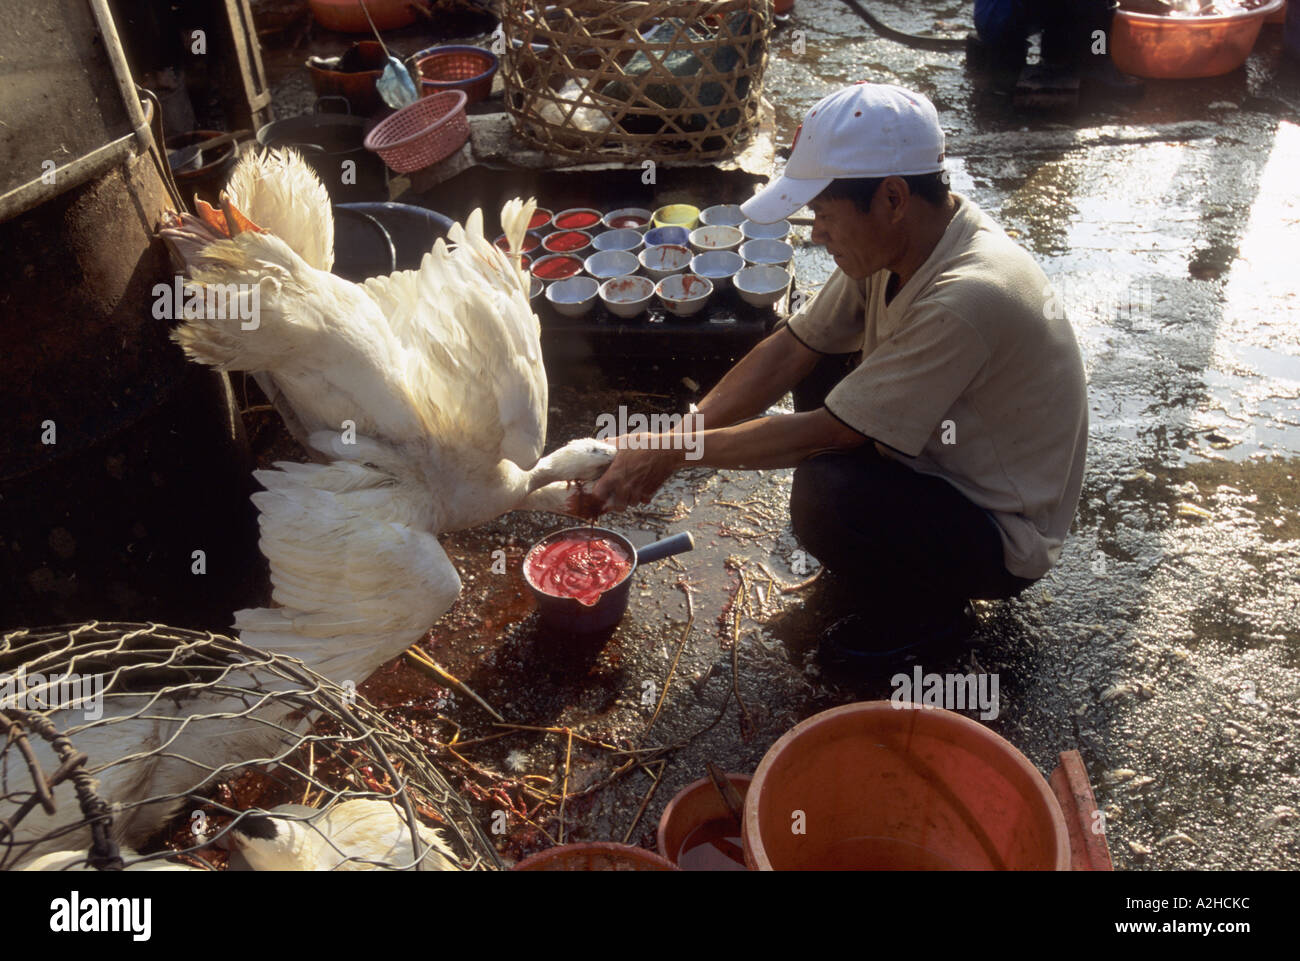 Geflügel für Verkauf, langen Bien Markt, Hanoi, Vietnam. Von der Geschichte über die Vogelgrippe in Asien. Stockfoto